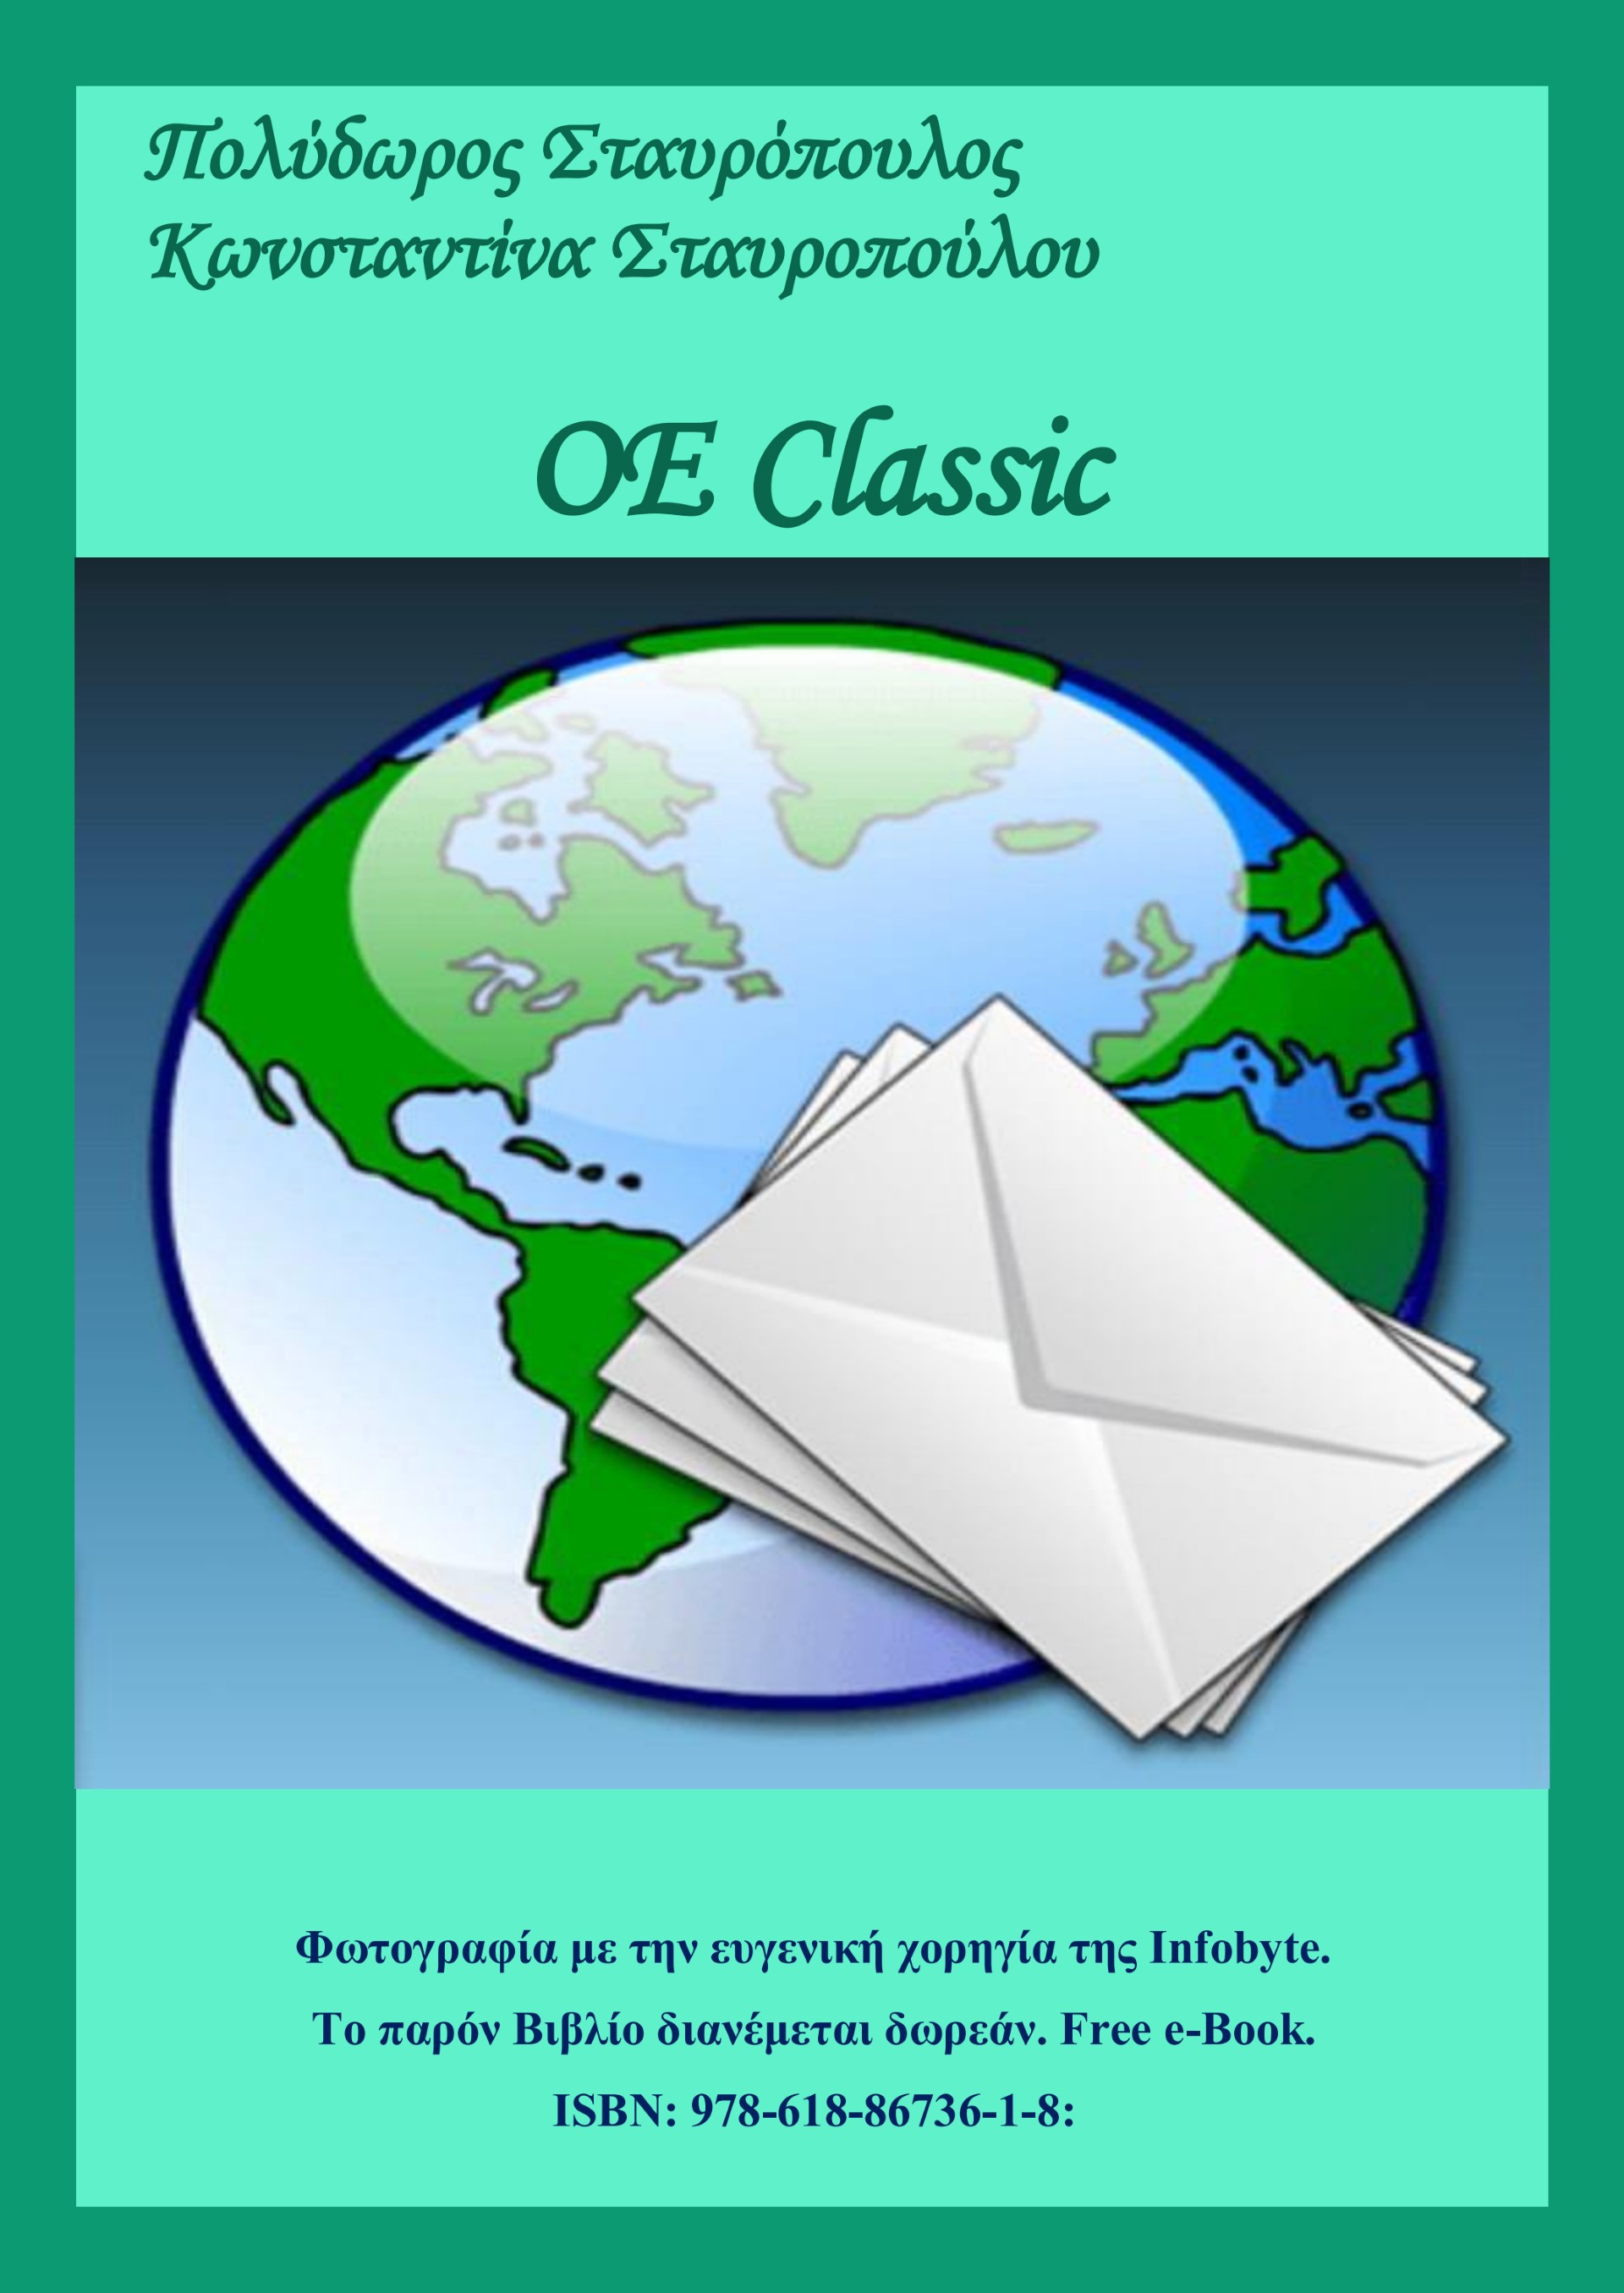 OE Classic [e-book]